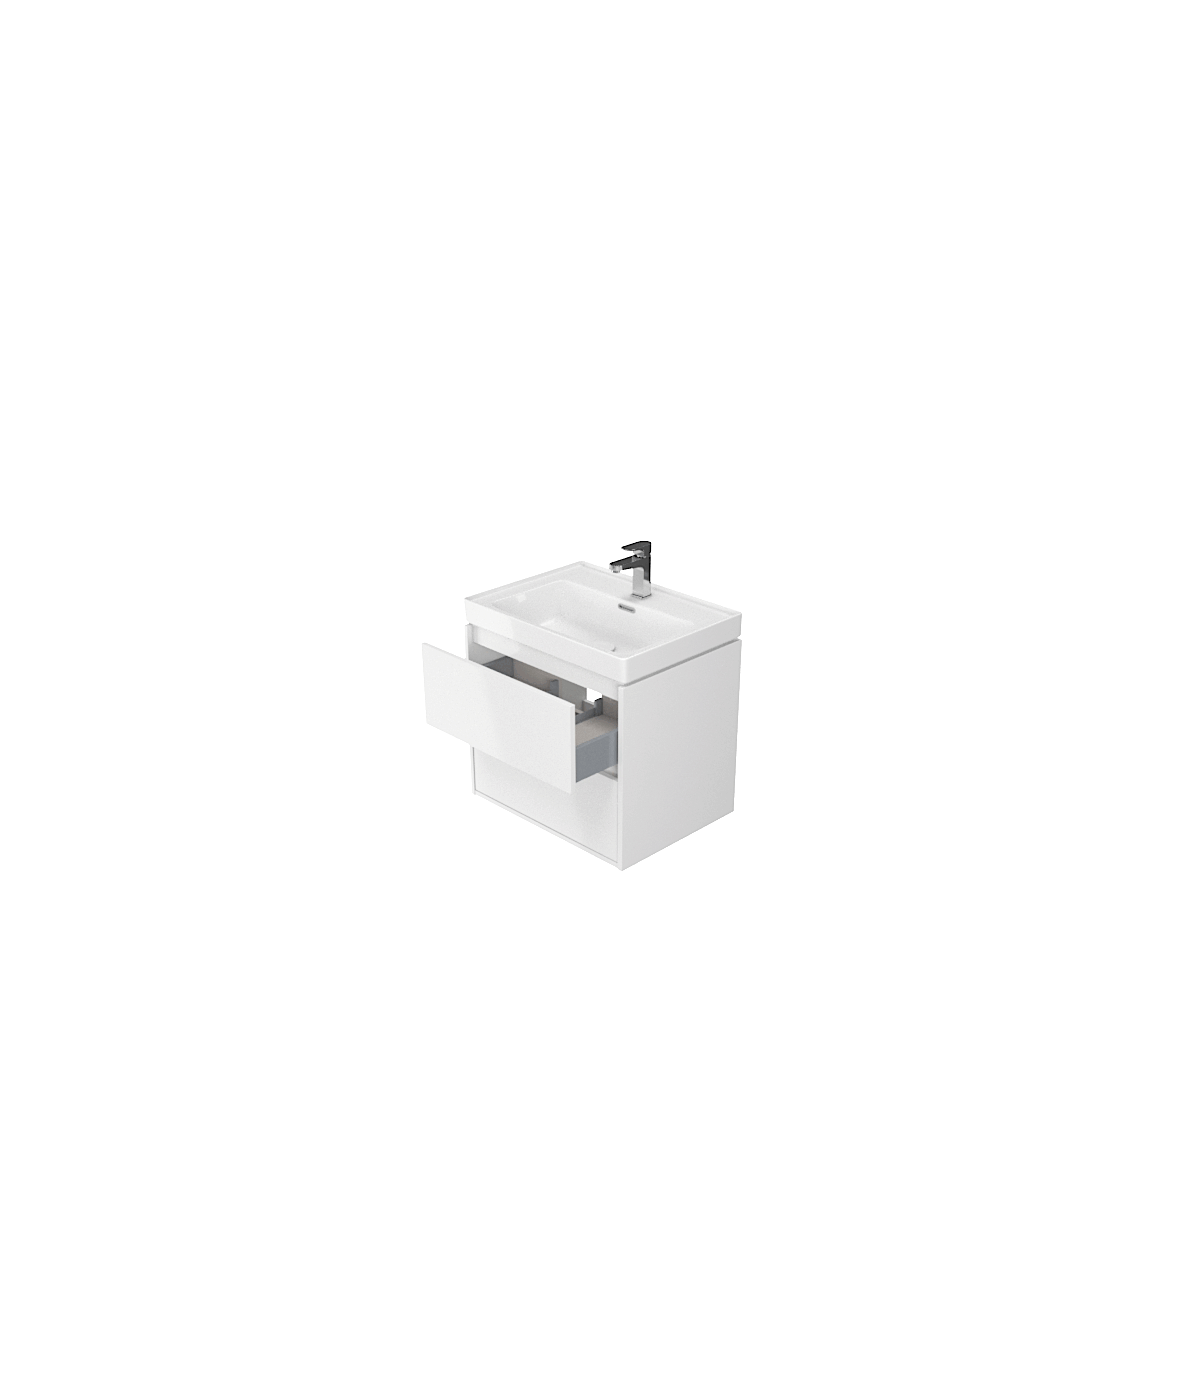 Badmöbel Set CREAZ 60 Waschbecken-Unterschrank mit Waschbecken, 2-Schubladen, Weiß